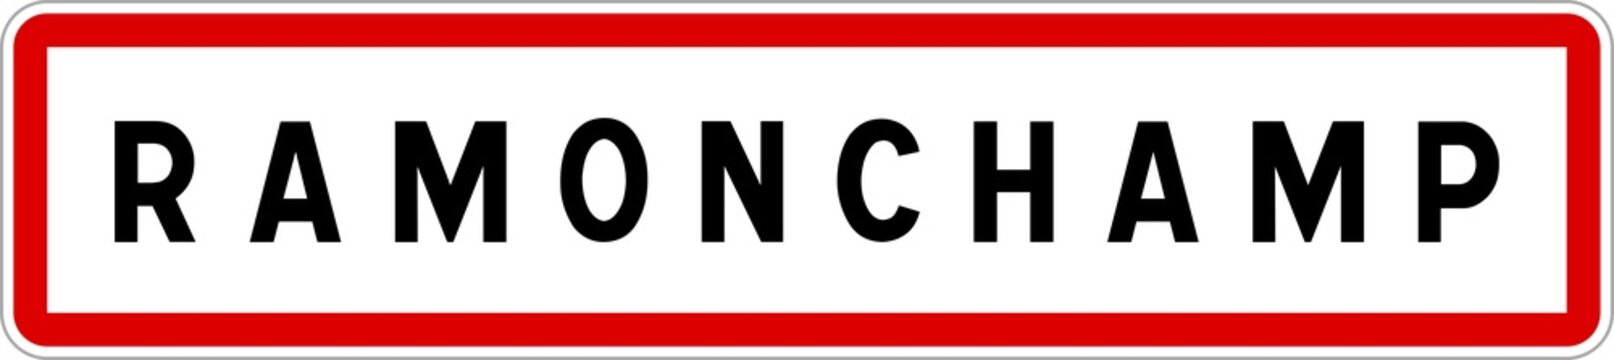 Panneau entrée ville agglomération Ramonchamp / Town entrance sign Ramonchamp